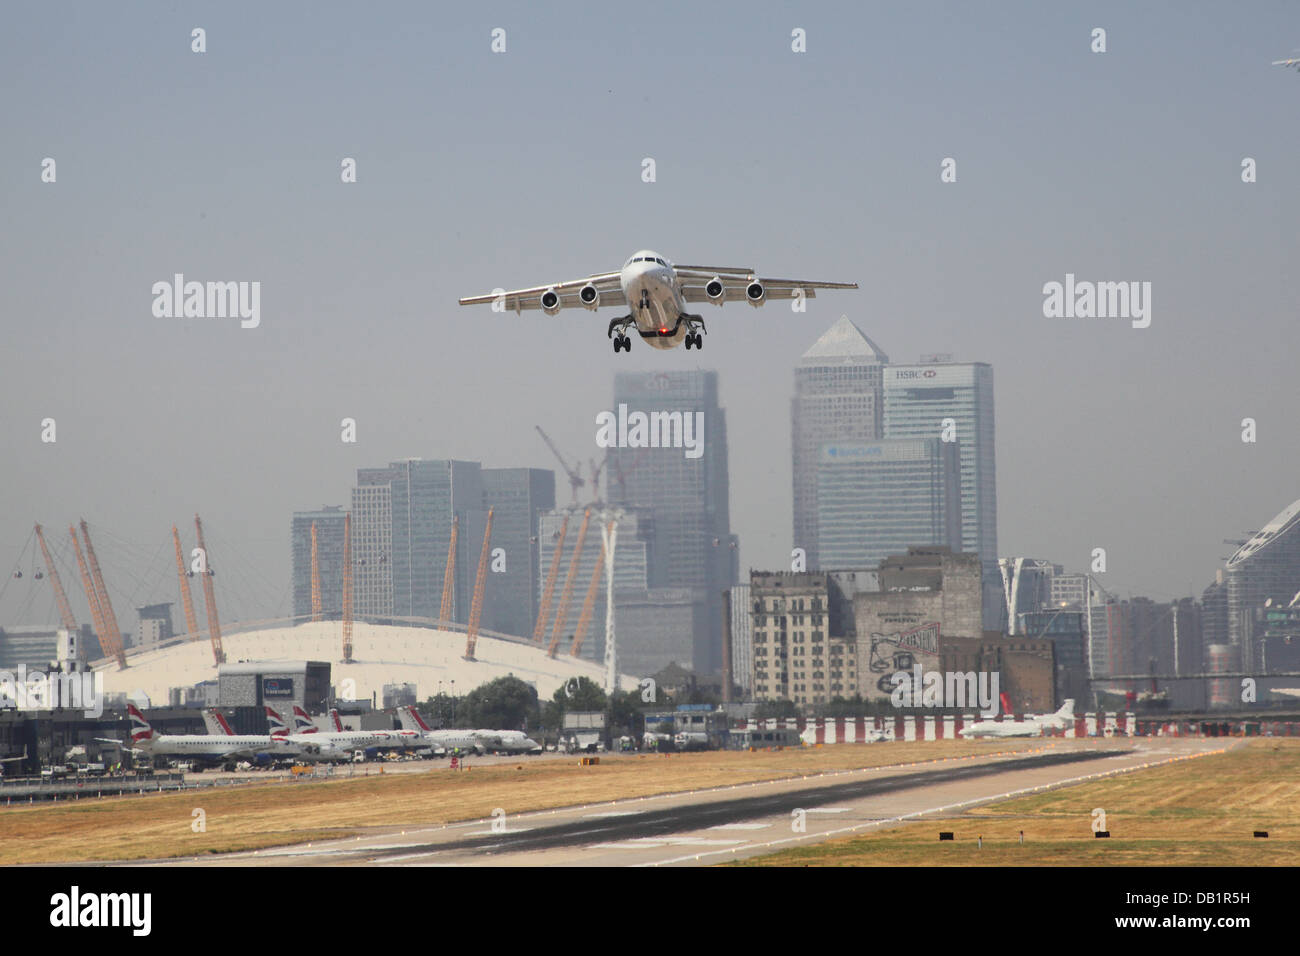 Un British Aerospace 146 jet décolle à l'aéroport de London City avec Canary Wharf et le dôme du millénaire en arrière-plan Banque D'Images